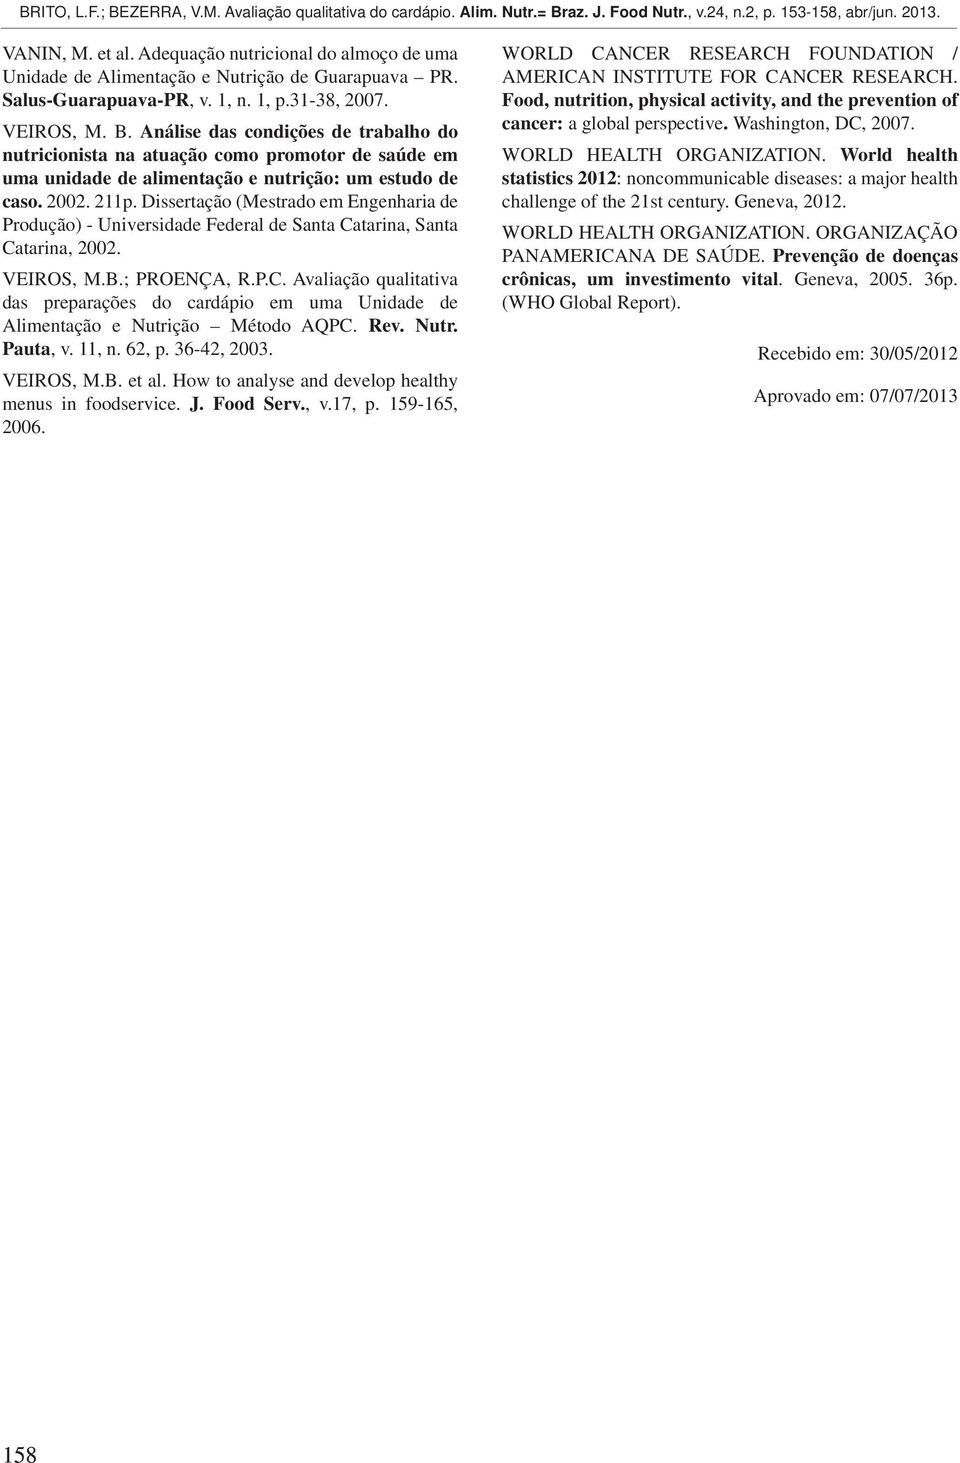 Dissertação (Mestrado em Engenharia de Produção) - Universidade Federal de Santa Catarina, Santa Catarina, 2002. VEIROS, M.B.; PROENÇA, R.P.C. Avaliação qualitativa das preparações do cardápio em uma Unidade de Alimentação e Nutrição Método AQPC.